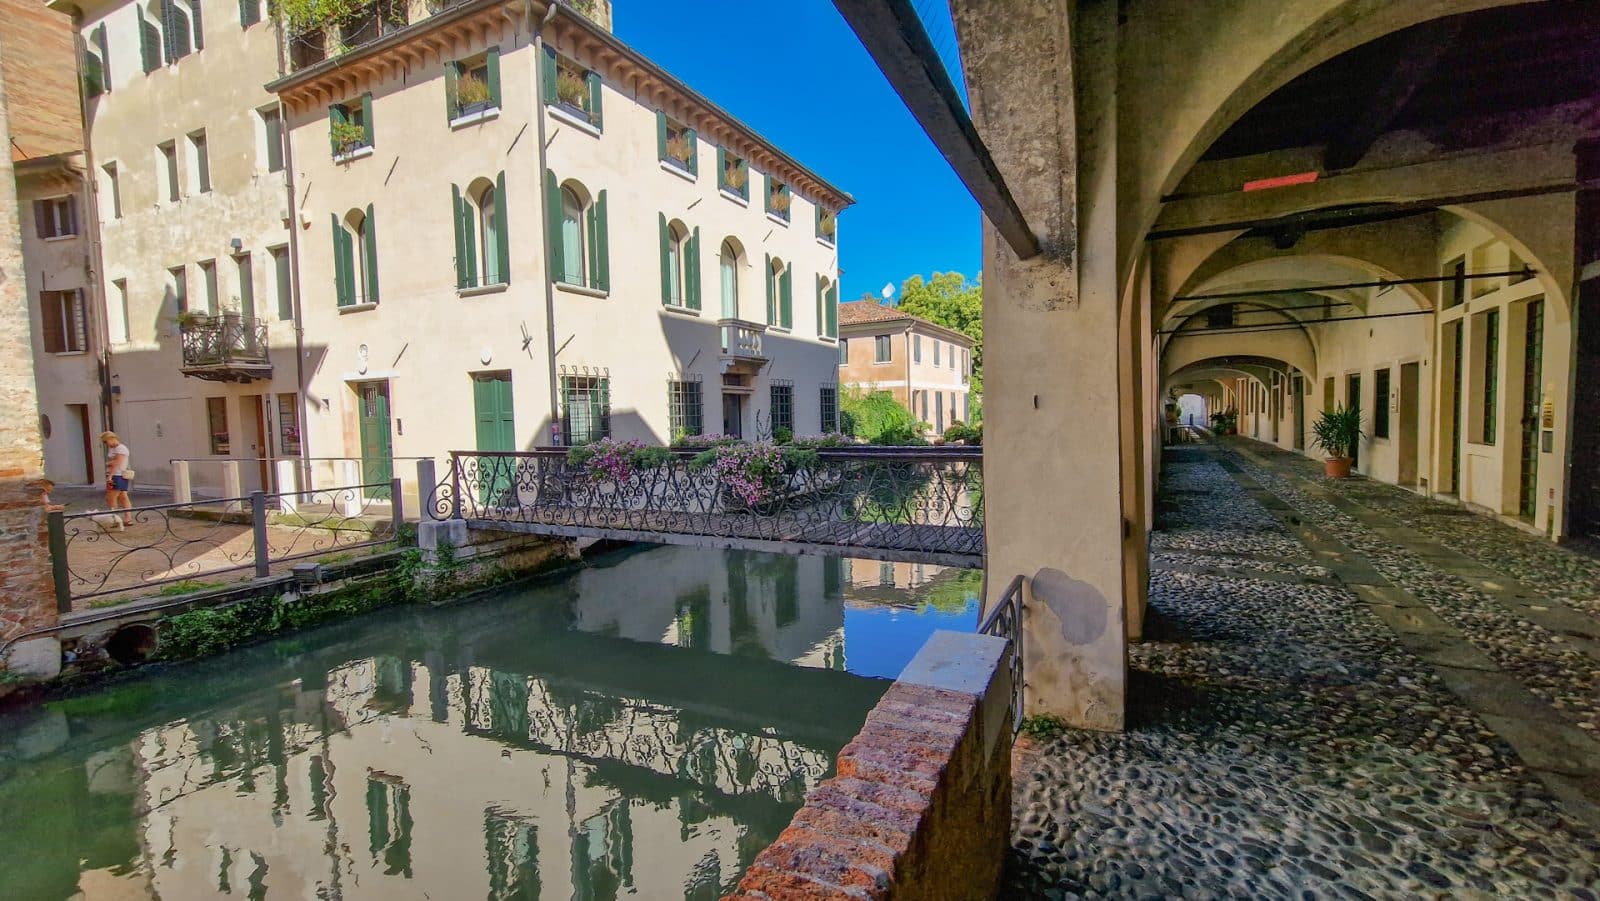 10 curiosidades de Treviso que te harán querer visitar